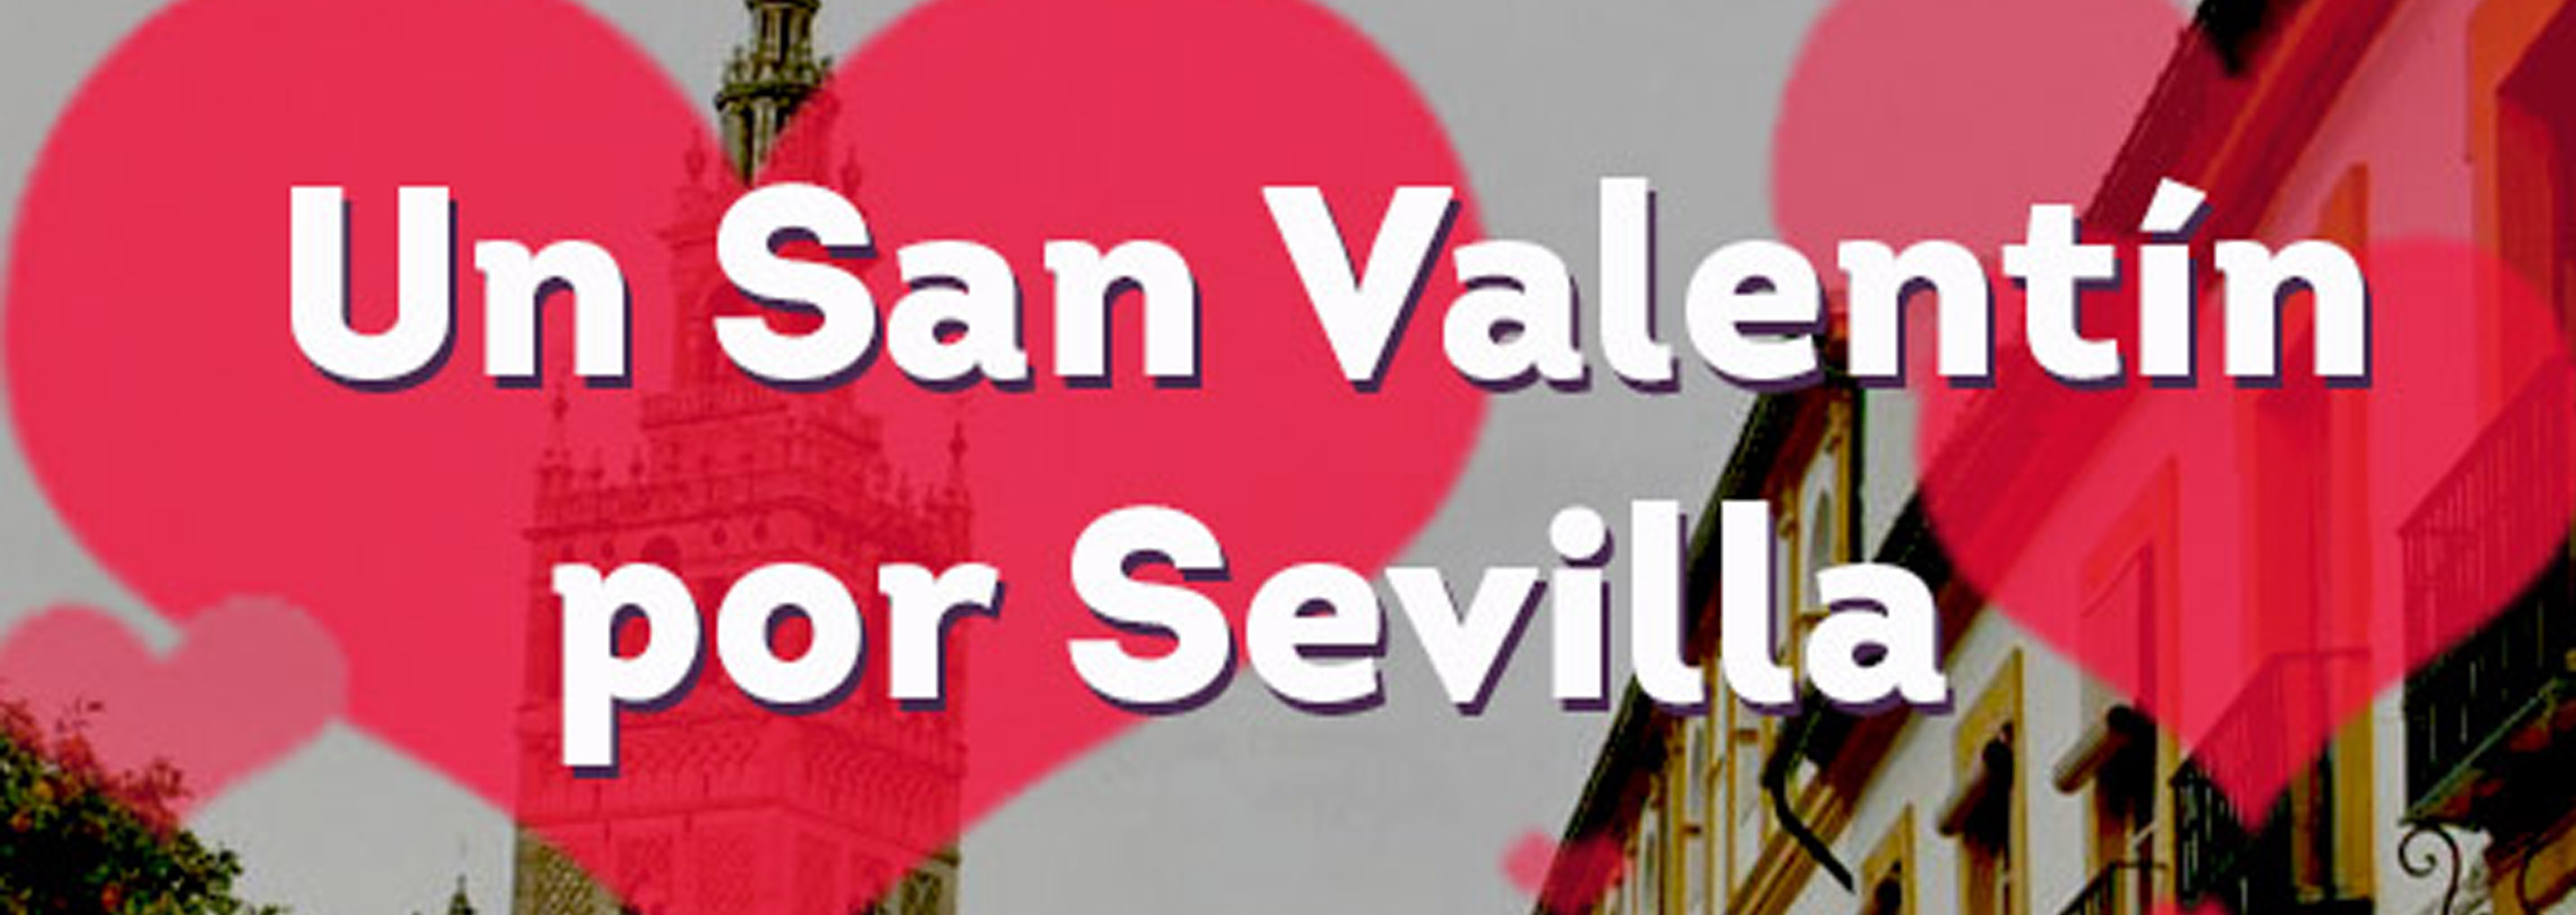 San Valentín en Sevilla: Regala una ruta por Santa Cruz